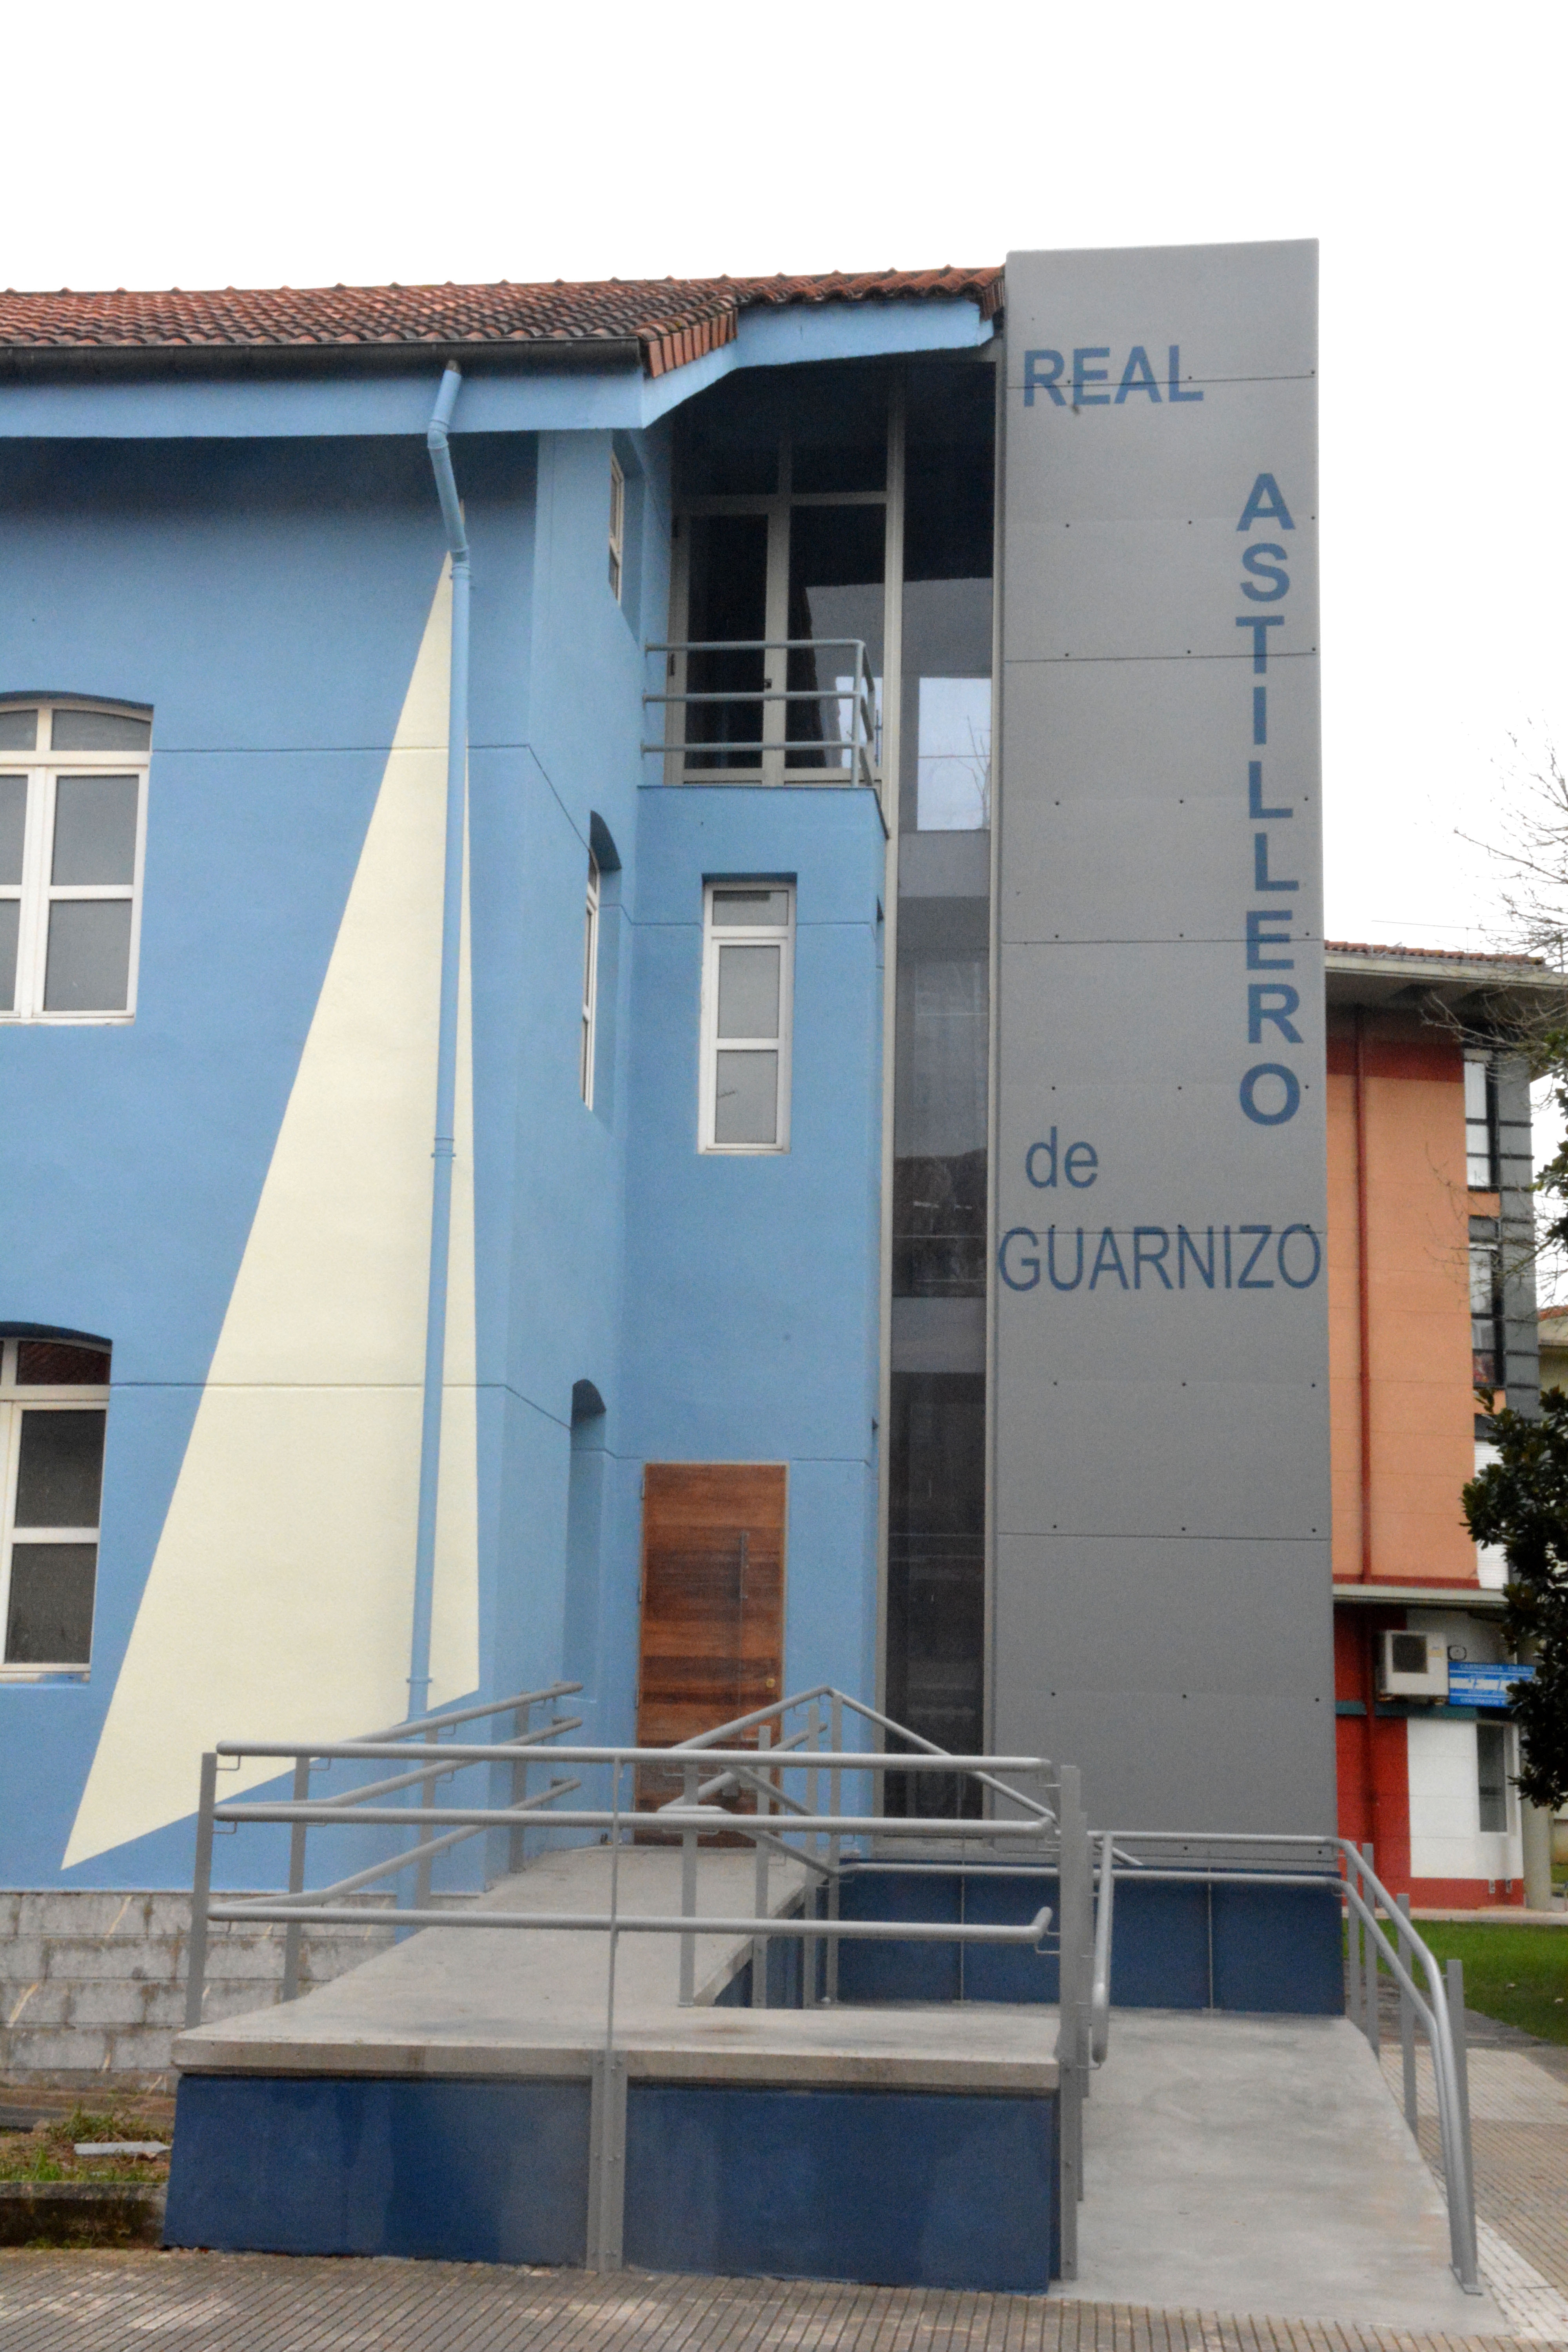 Centro expositivo en Guarnizo